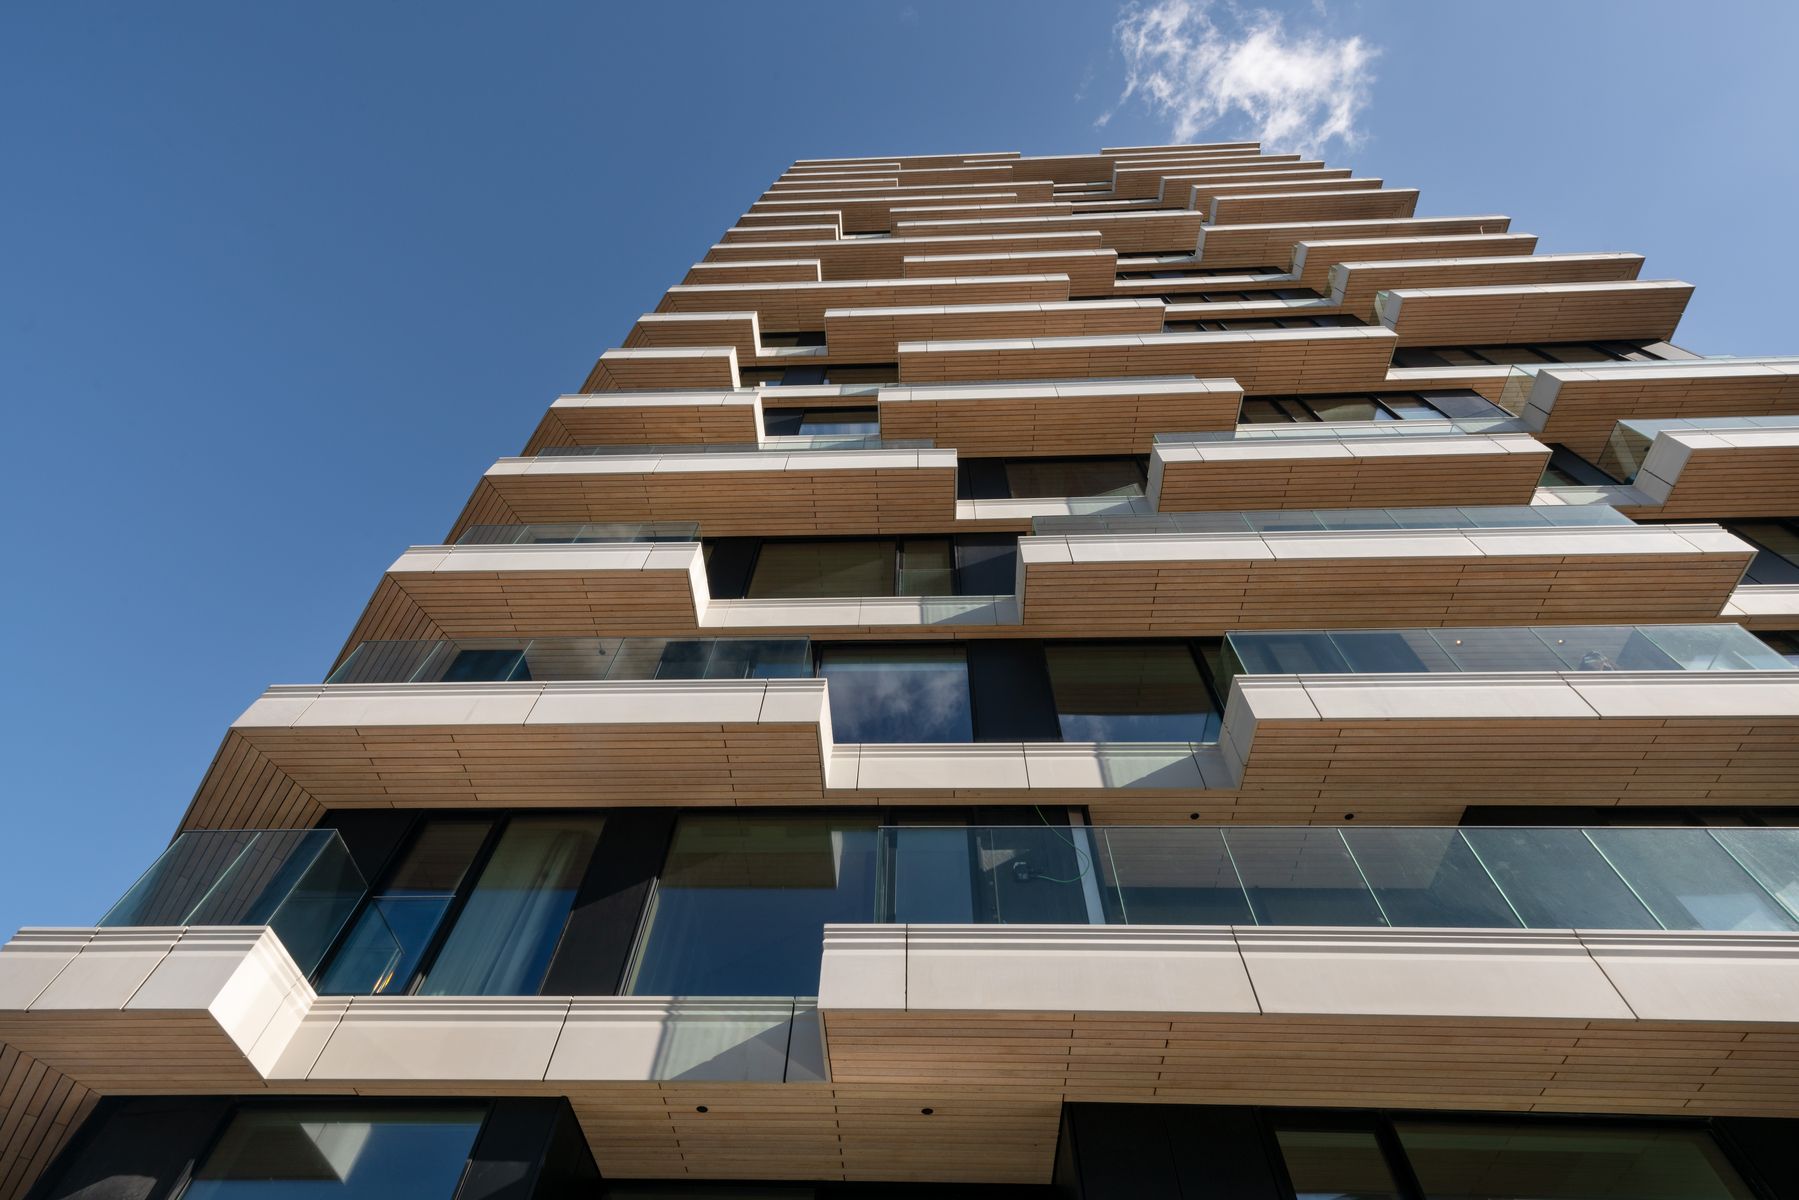 Fasáda s nepravi delne umiestnenými balkónmi dosahuje vďaka veľkému podielu skla v kombinácii s drevenou nosnou konštrukciou čistý architektonický výraz.